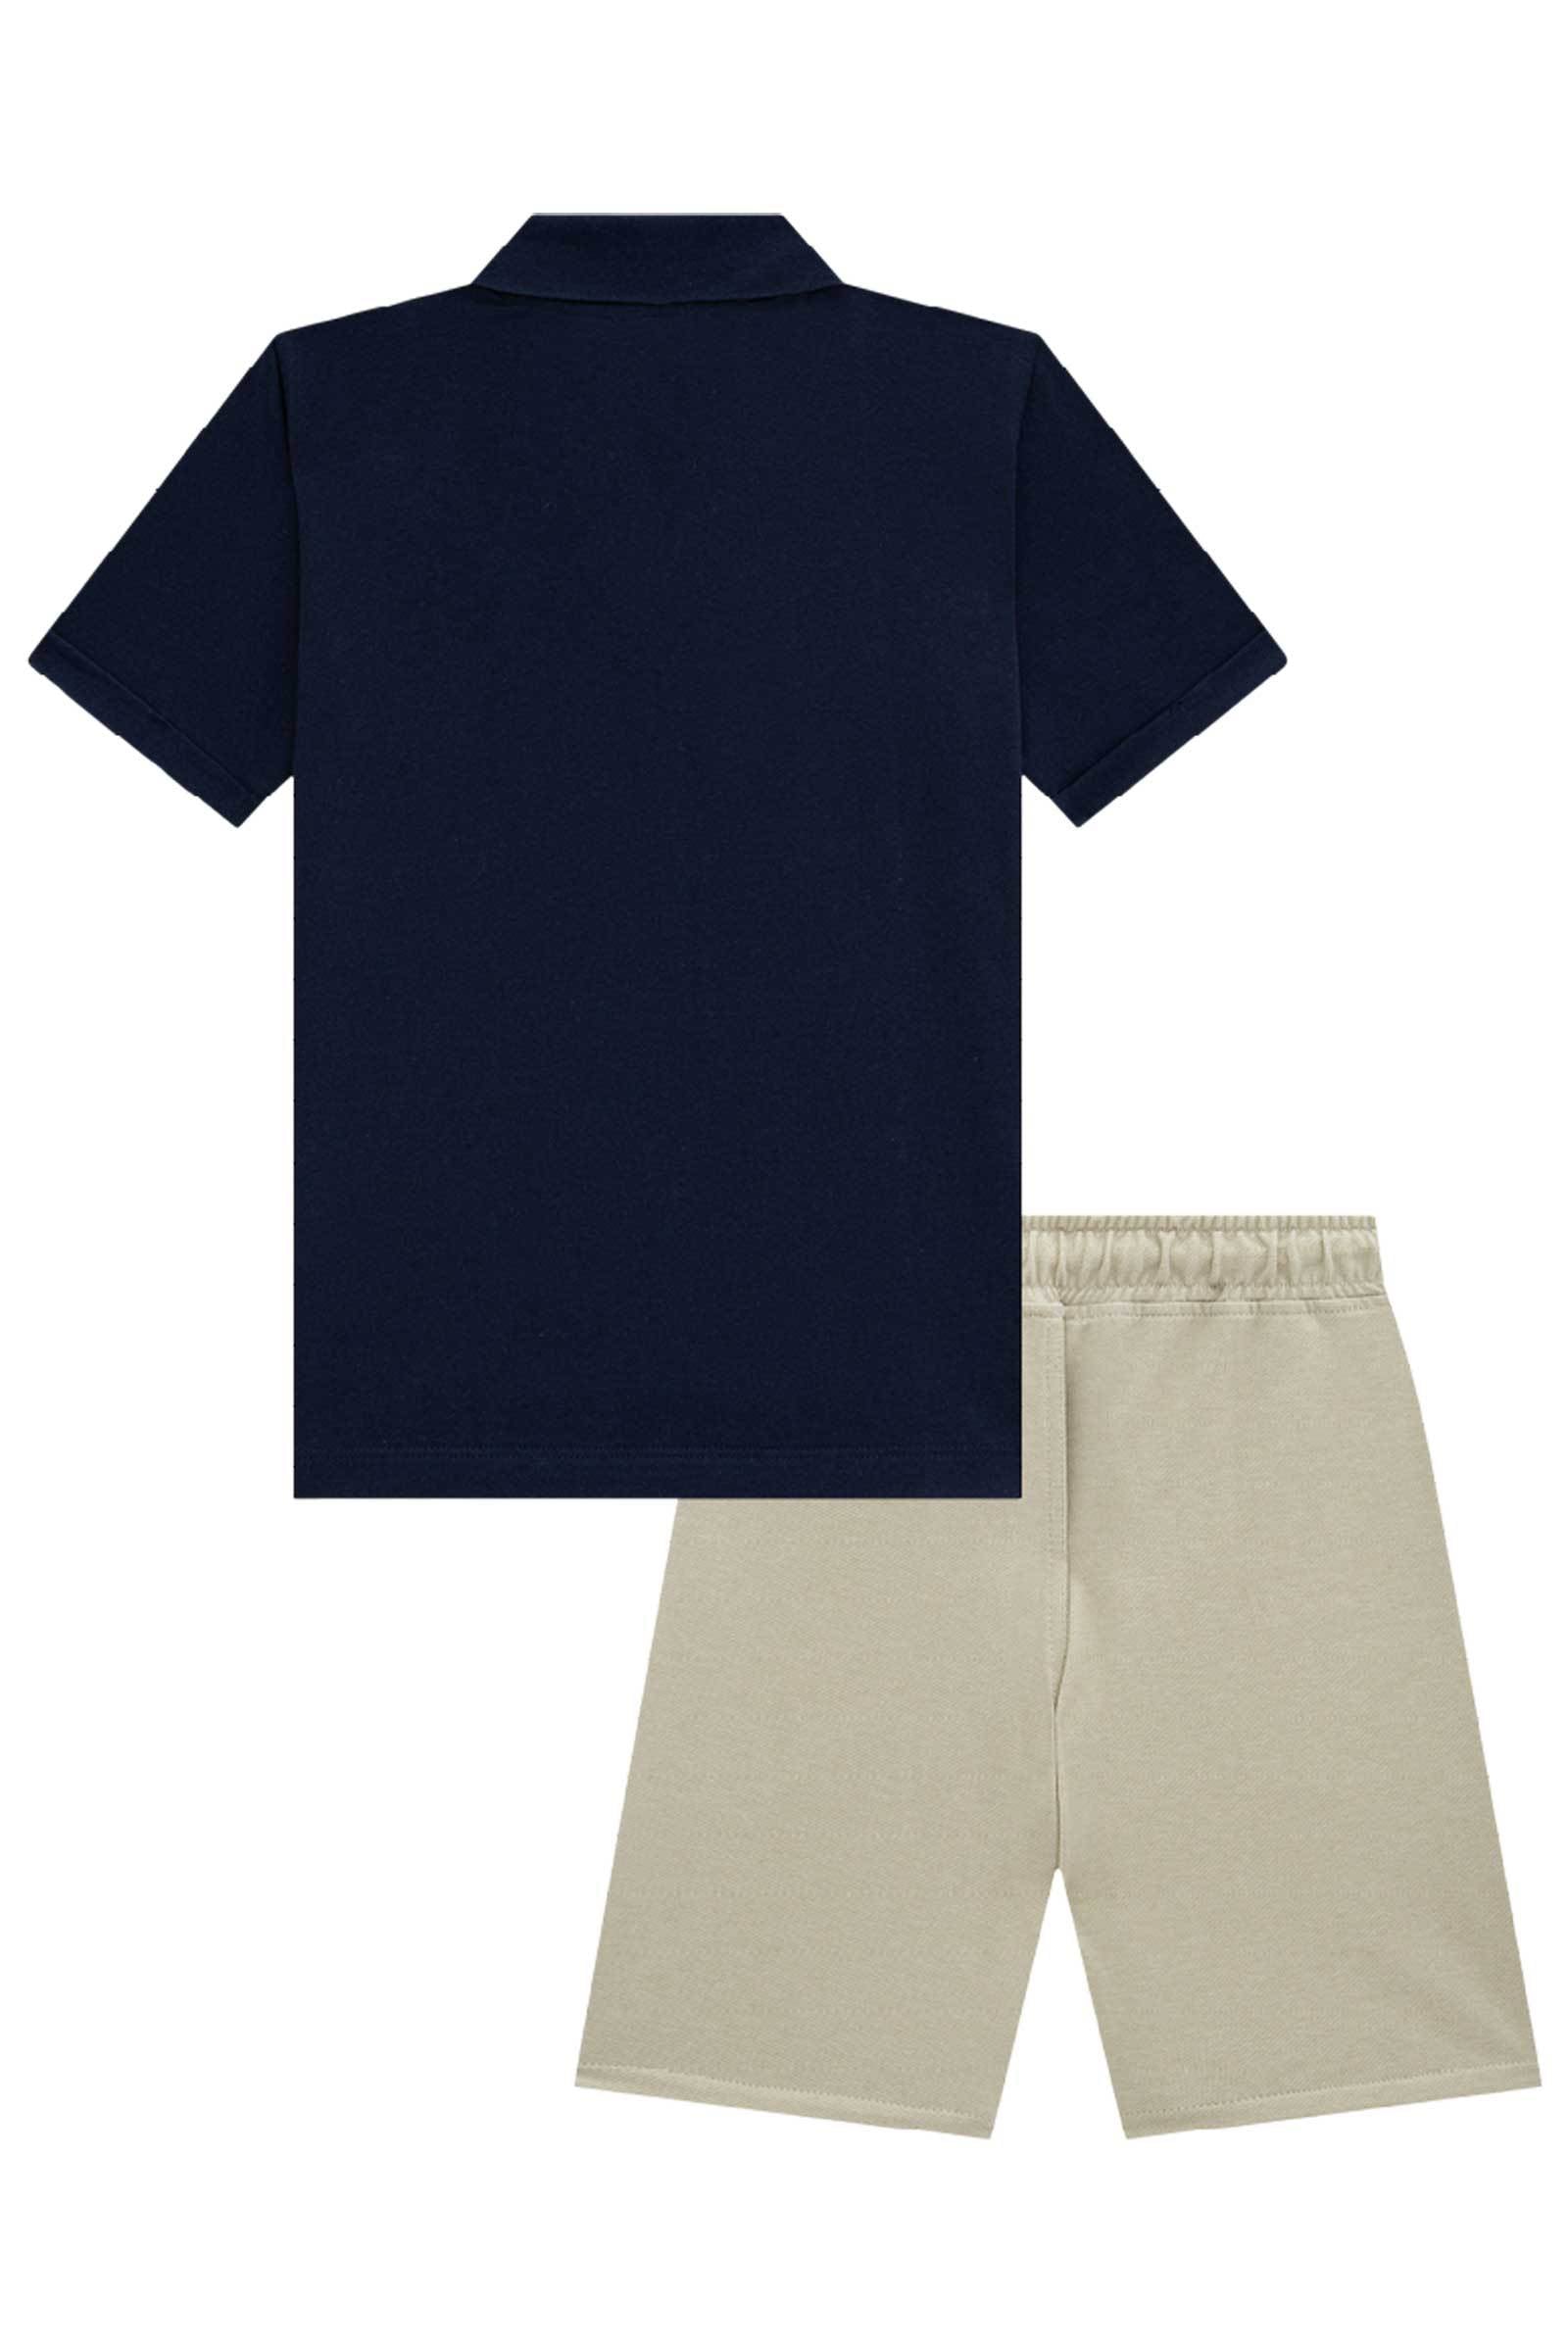 Conjunto de Camisa Polo em Meia Malha e Bermuda em Cotton Jeans com Elastano 75382 Johnny Fox